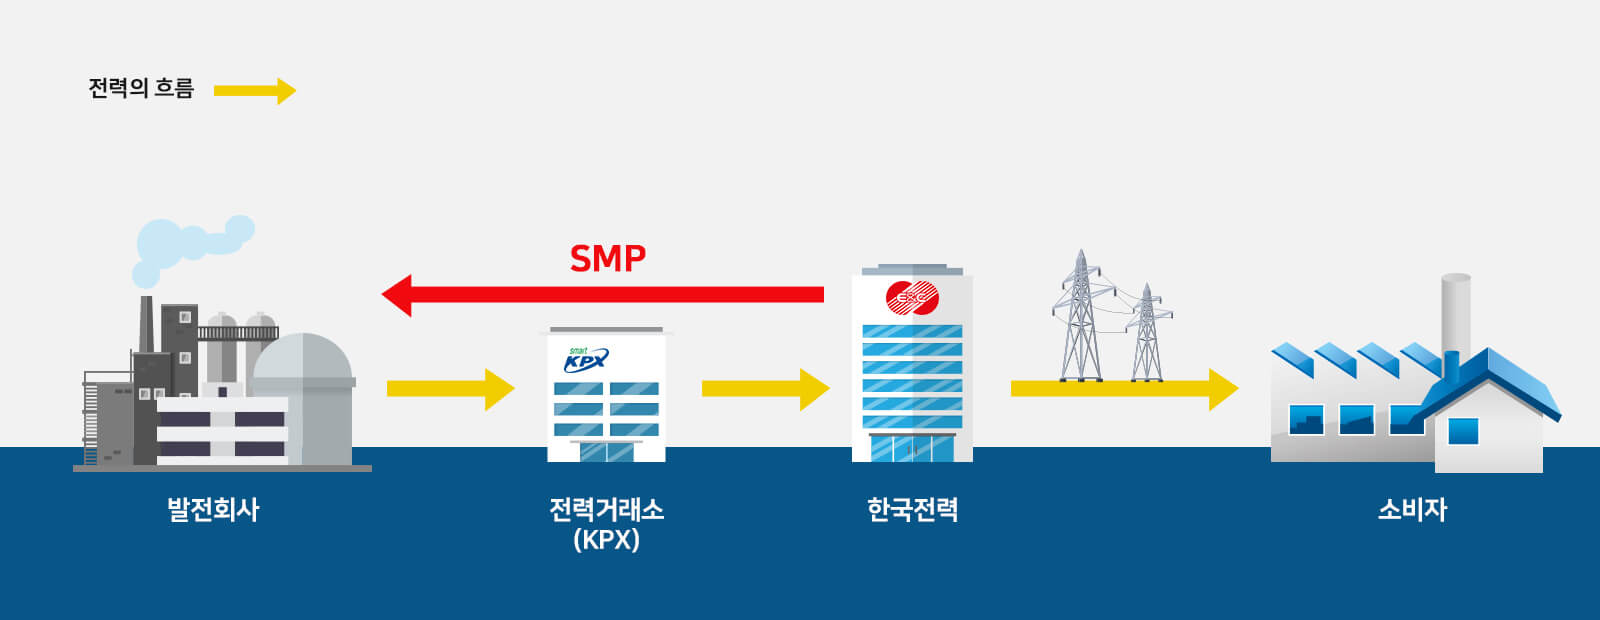 우리나라 전력시장의 구조와 SMP (SK E&S 에너지백과)